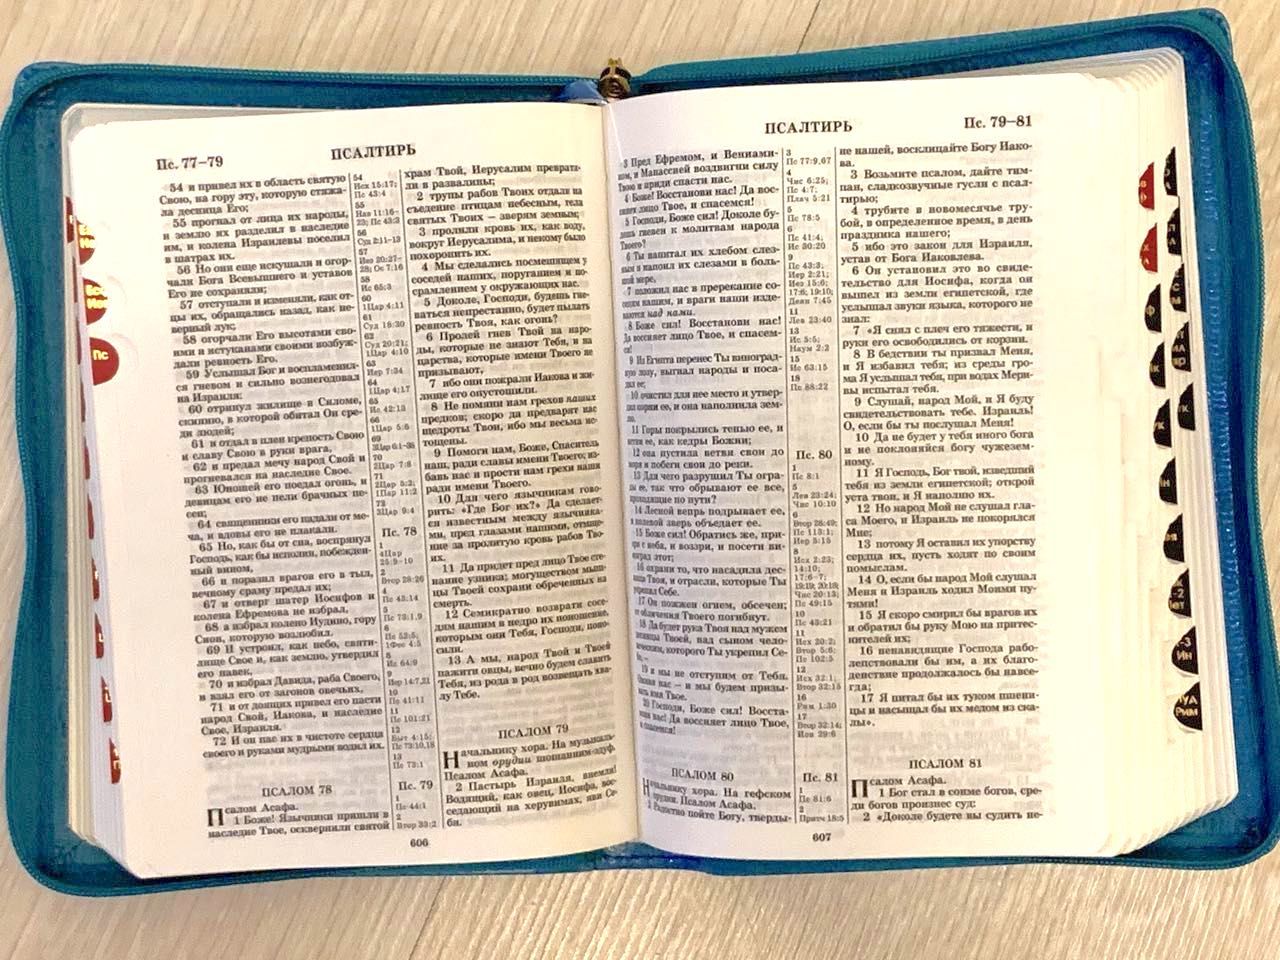 БИБЛИЯ 046zti формат, переплет из искусственной кожи на молнии с индексами, термо-штамп терновый венец надпись золотом "Библия", цвет бирюза,  средний формат, 132*182 мм, цветные карты, шрифт 12 кегель